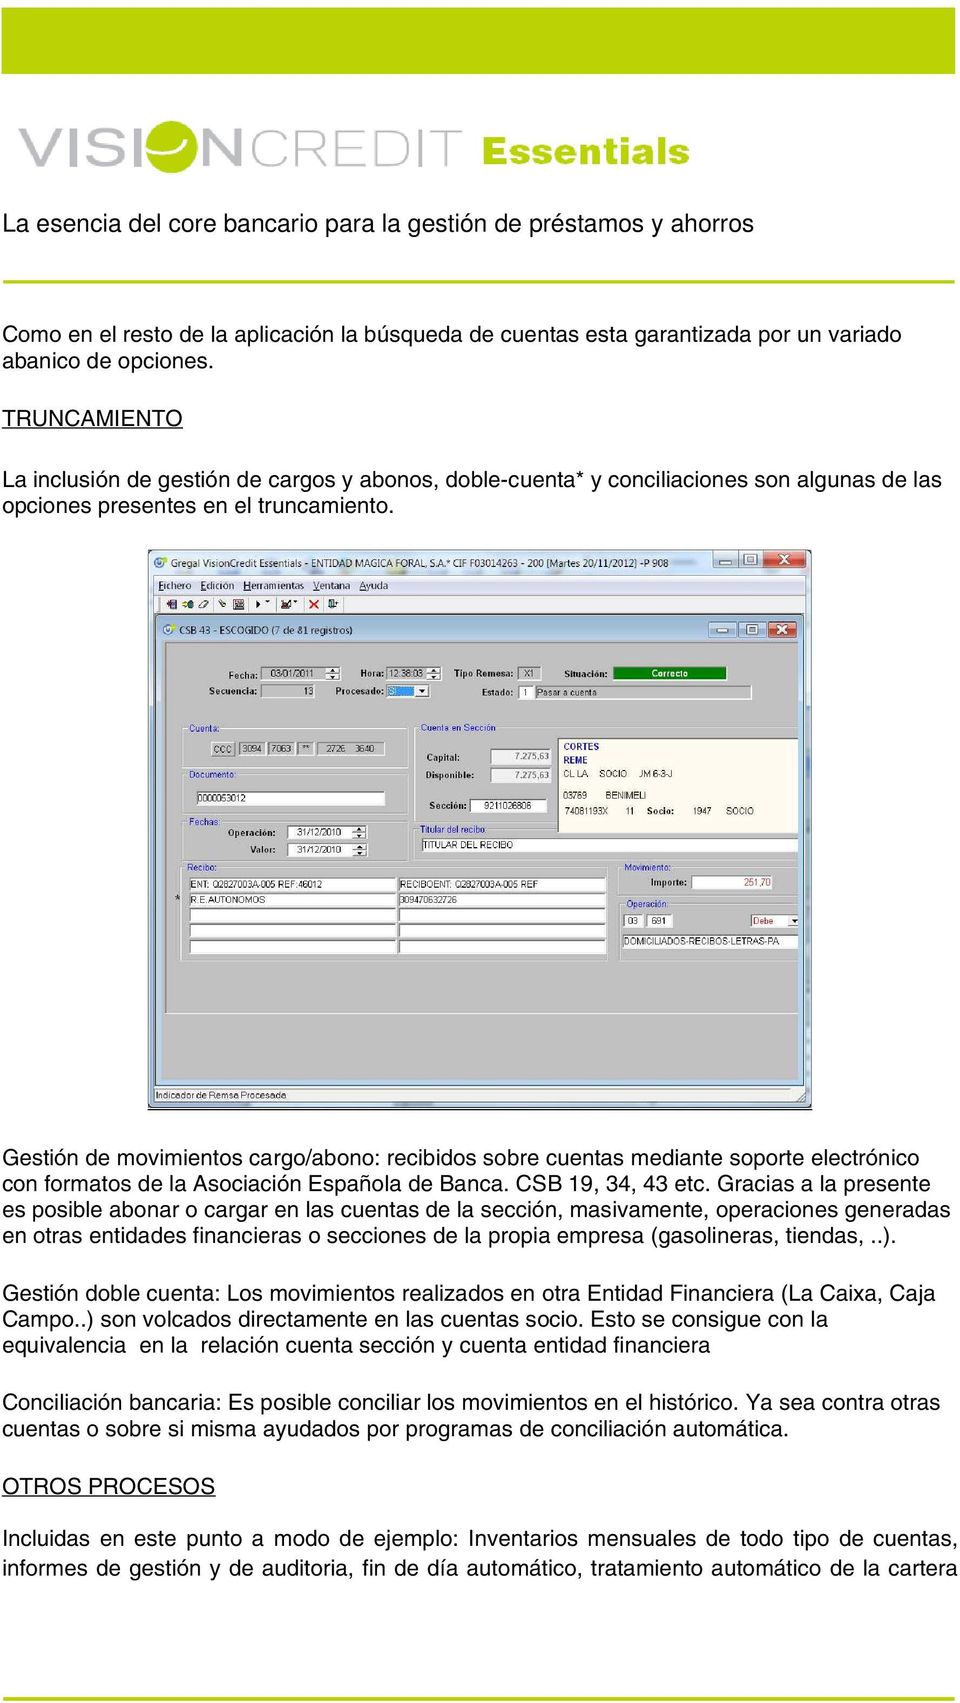 Gestión de movimientos cargo/abono: recibidos sobre cuentas mediante soporte electrónico con formatos de la Asociación Española de Banca. CSB 19, 34, 43 etc.